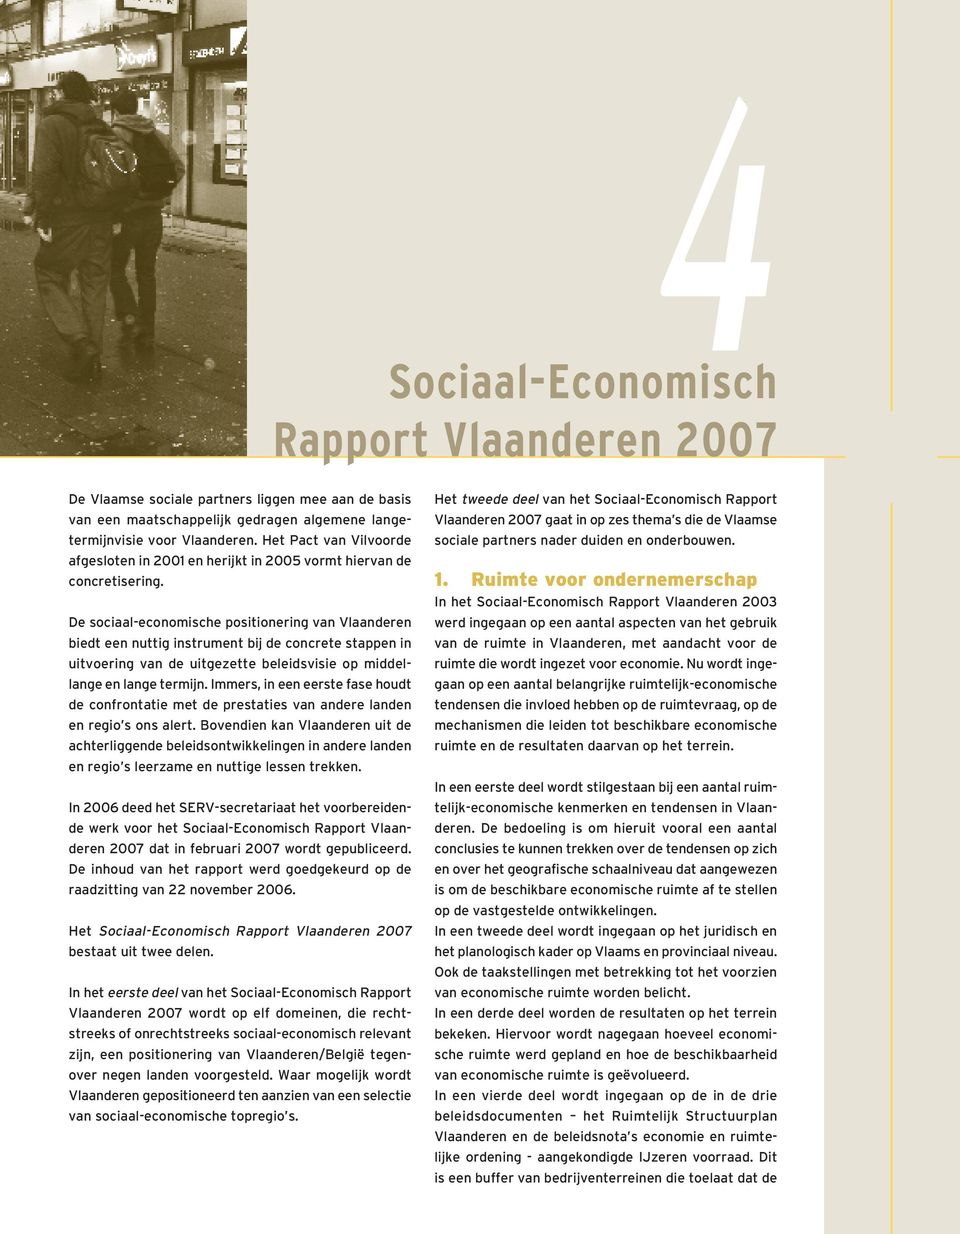 De sociaal-economische positionering van Vlaanderen biedt een nuttig instrument bij de concrete stappen in uitvoering van de uitgezette beleidsvisie op middellange en lange termijn.